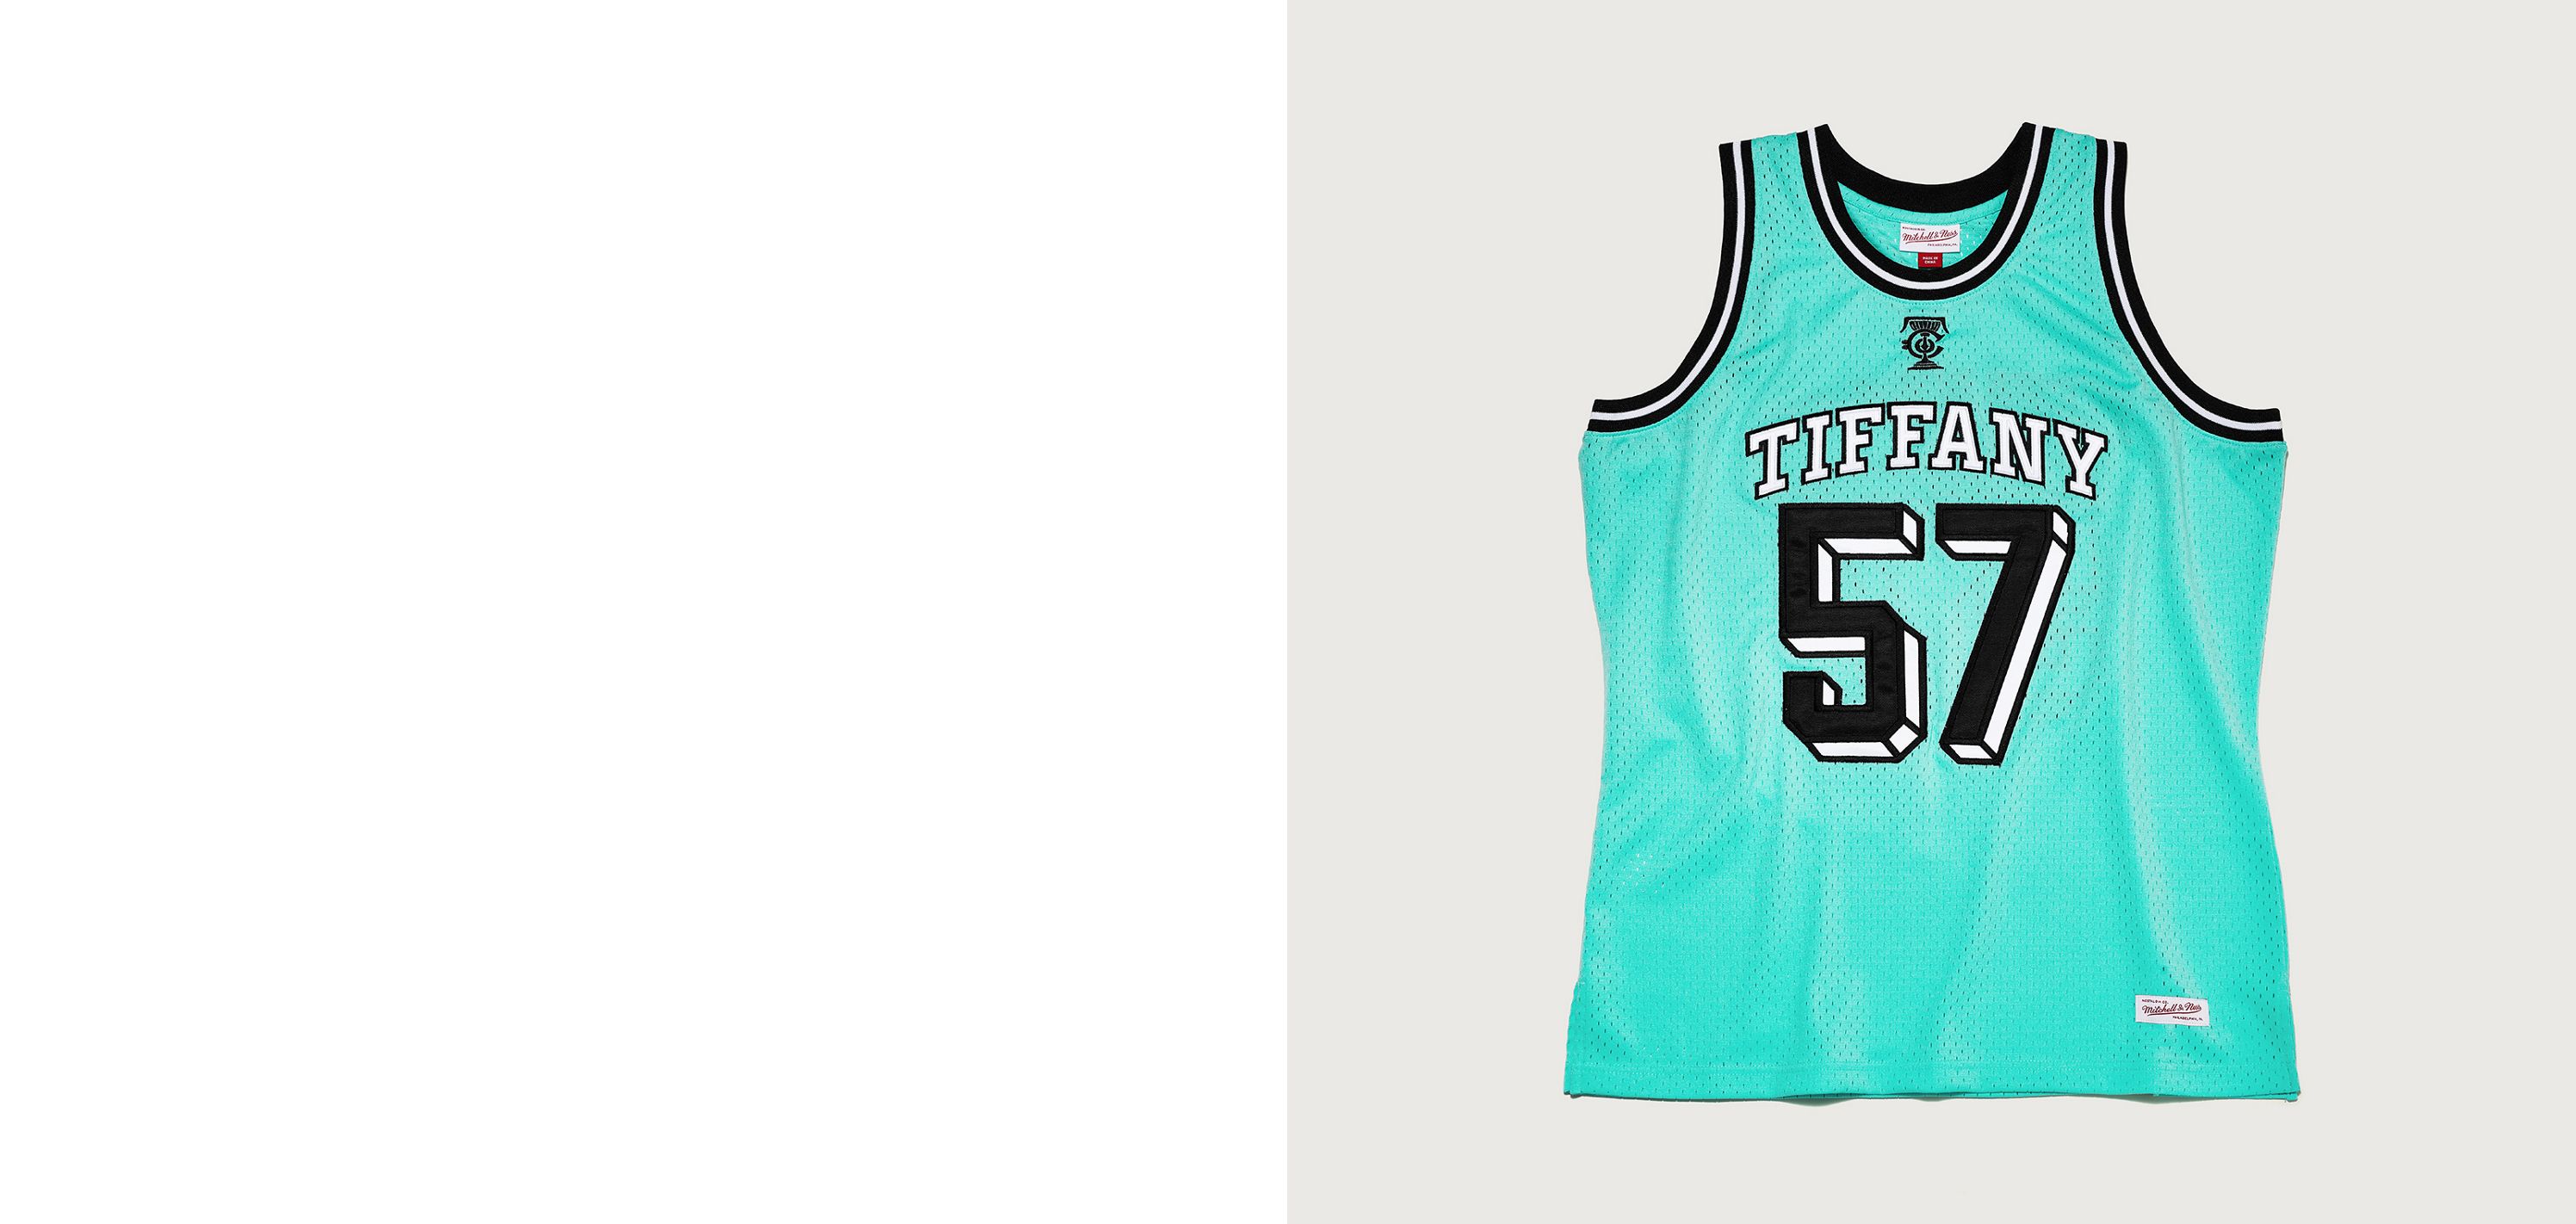 国産品 & Tiffany トップス Co. Jersey Ness & Mitchell NBA トップス 